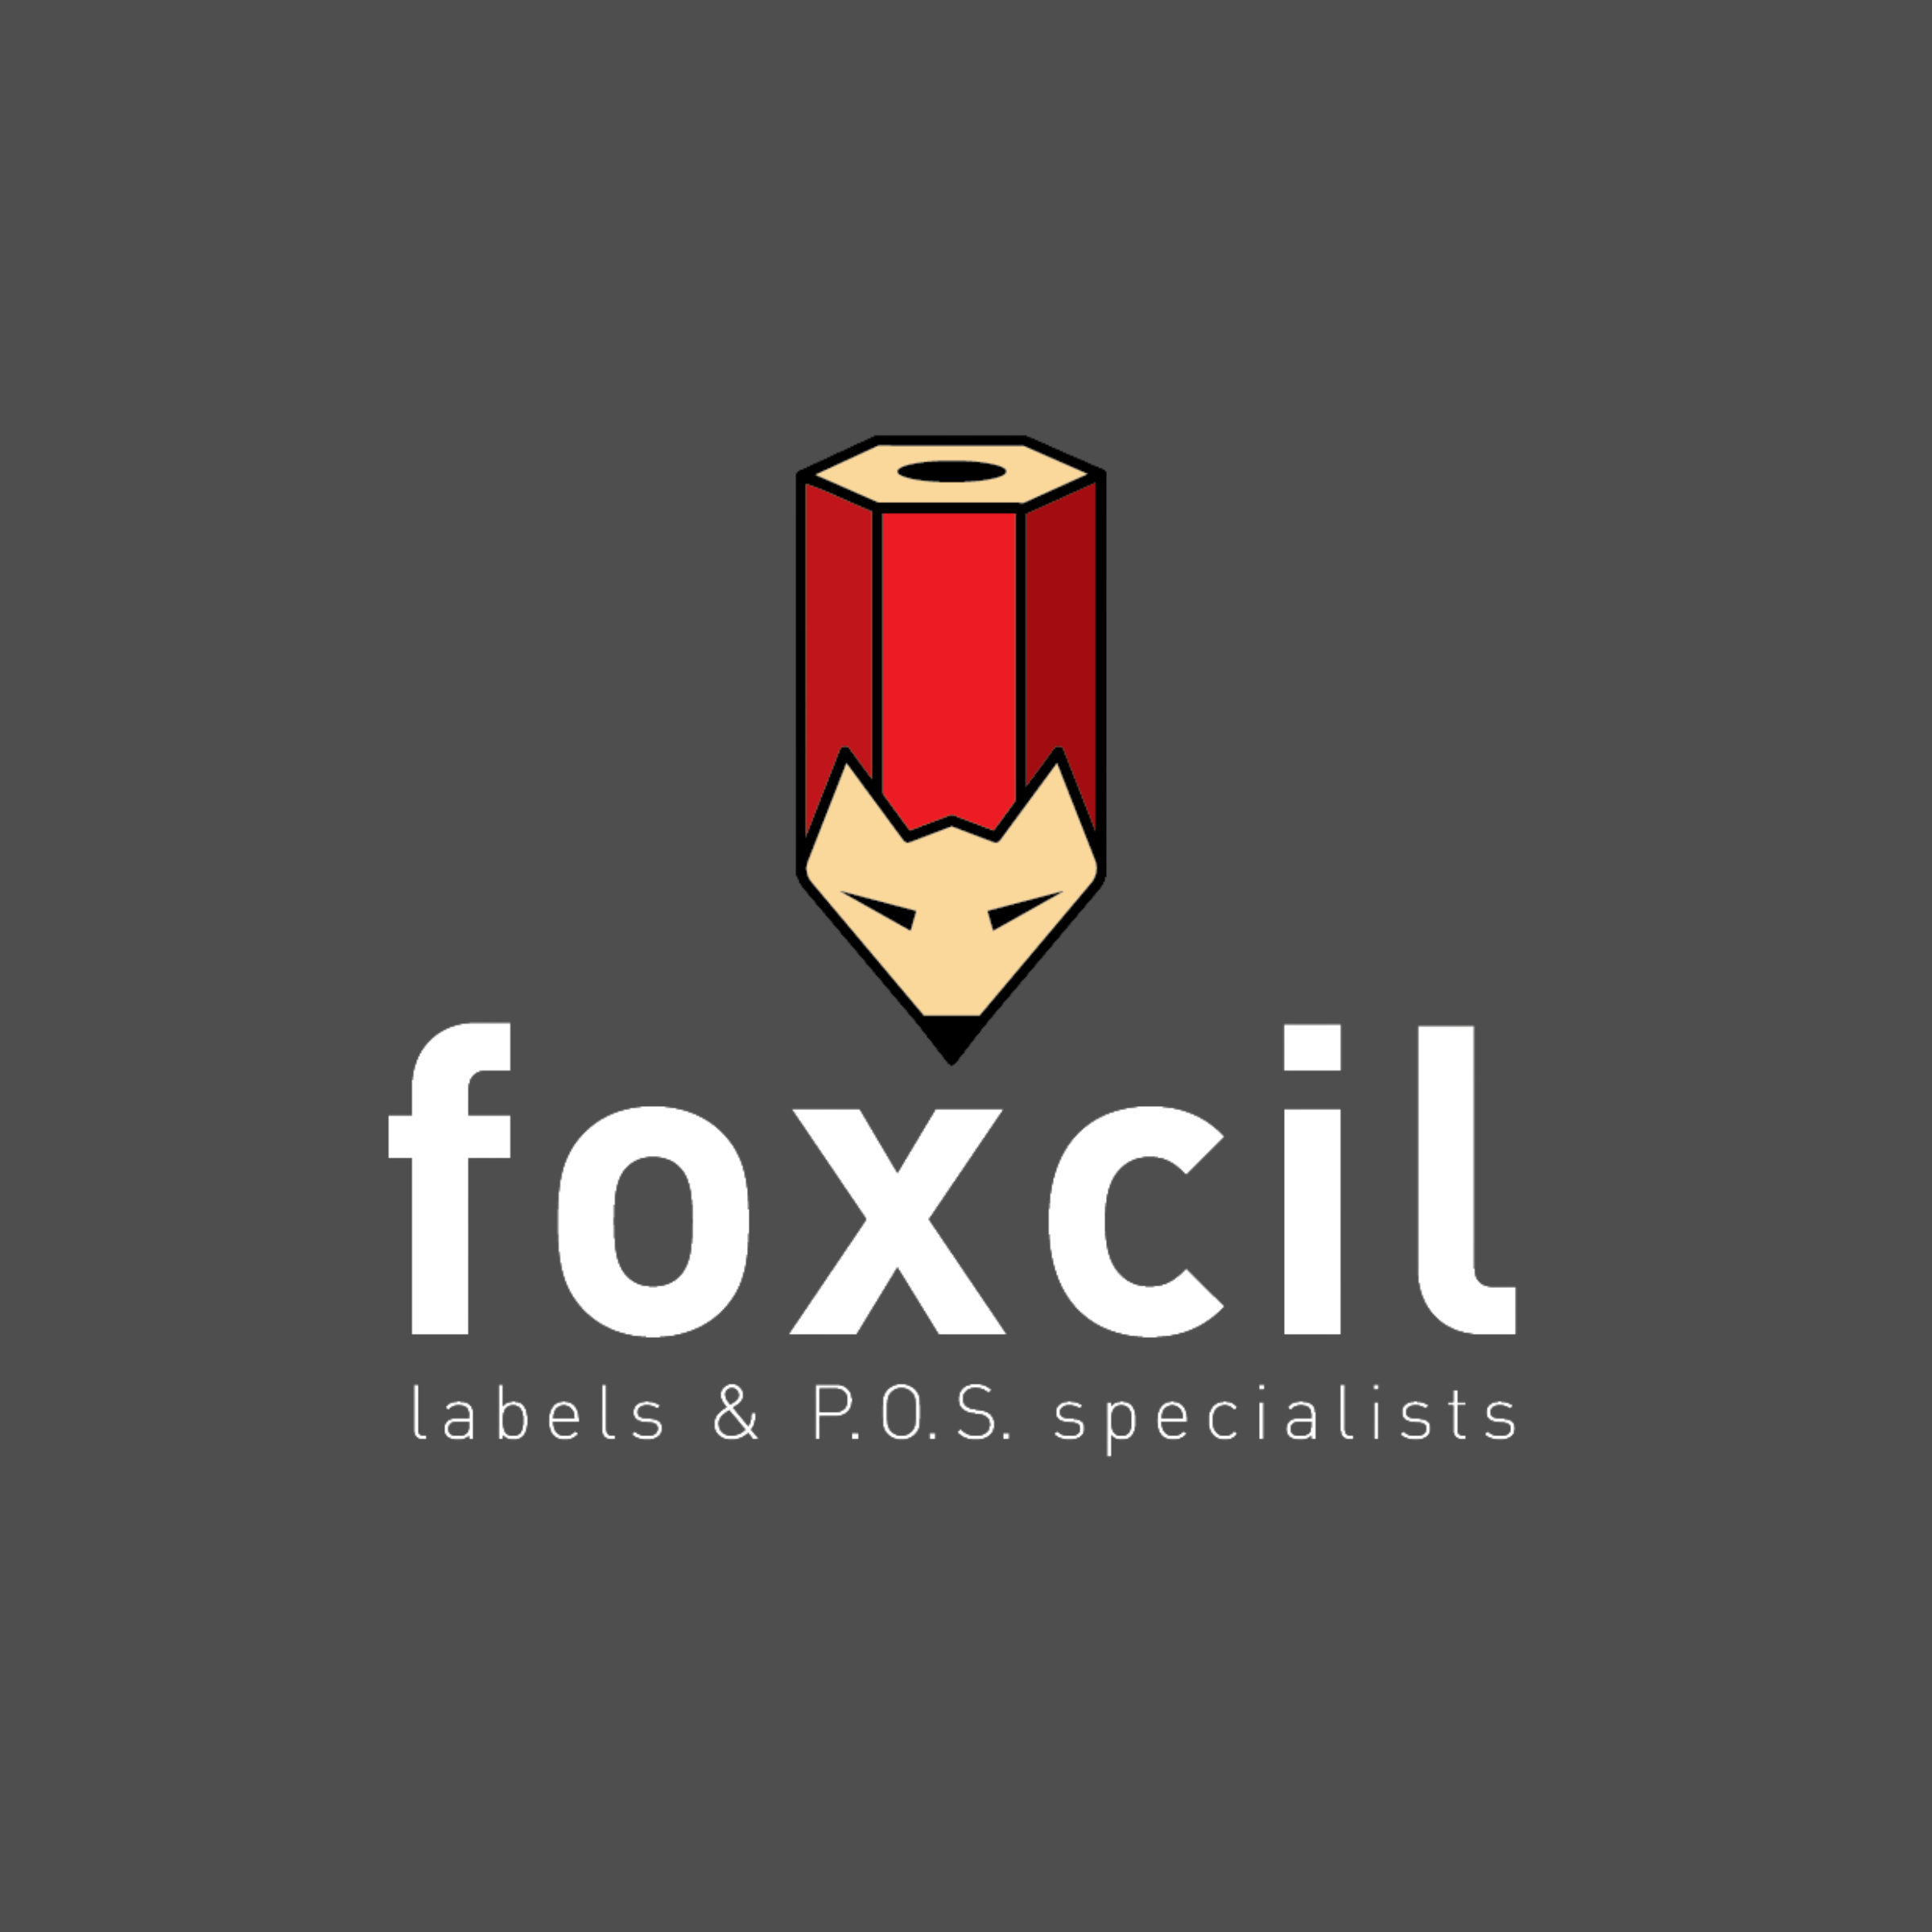 Foxcil